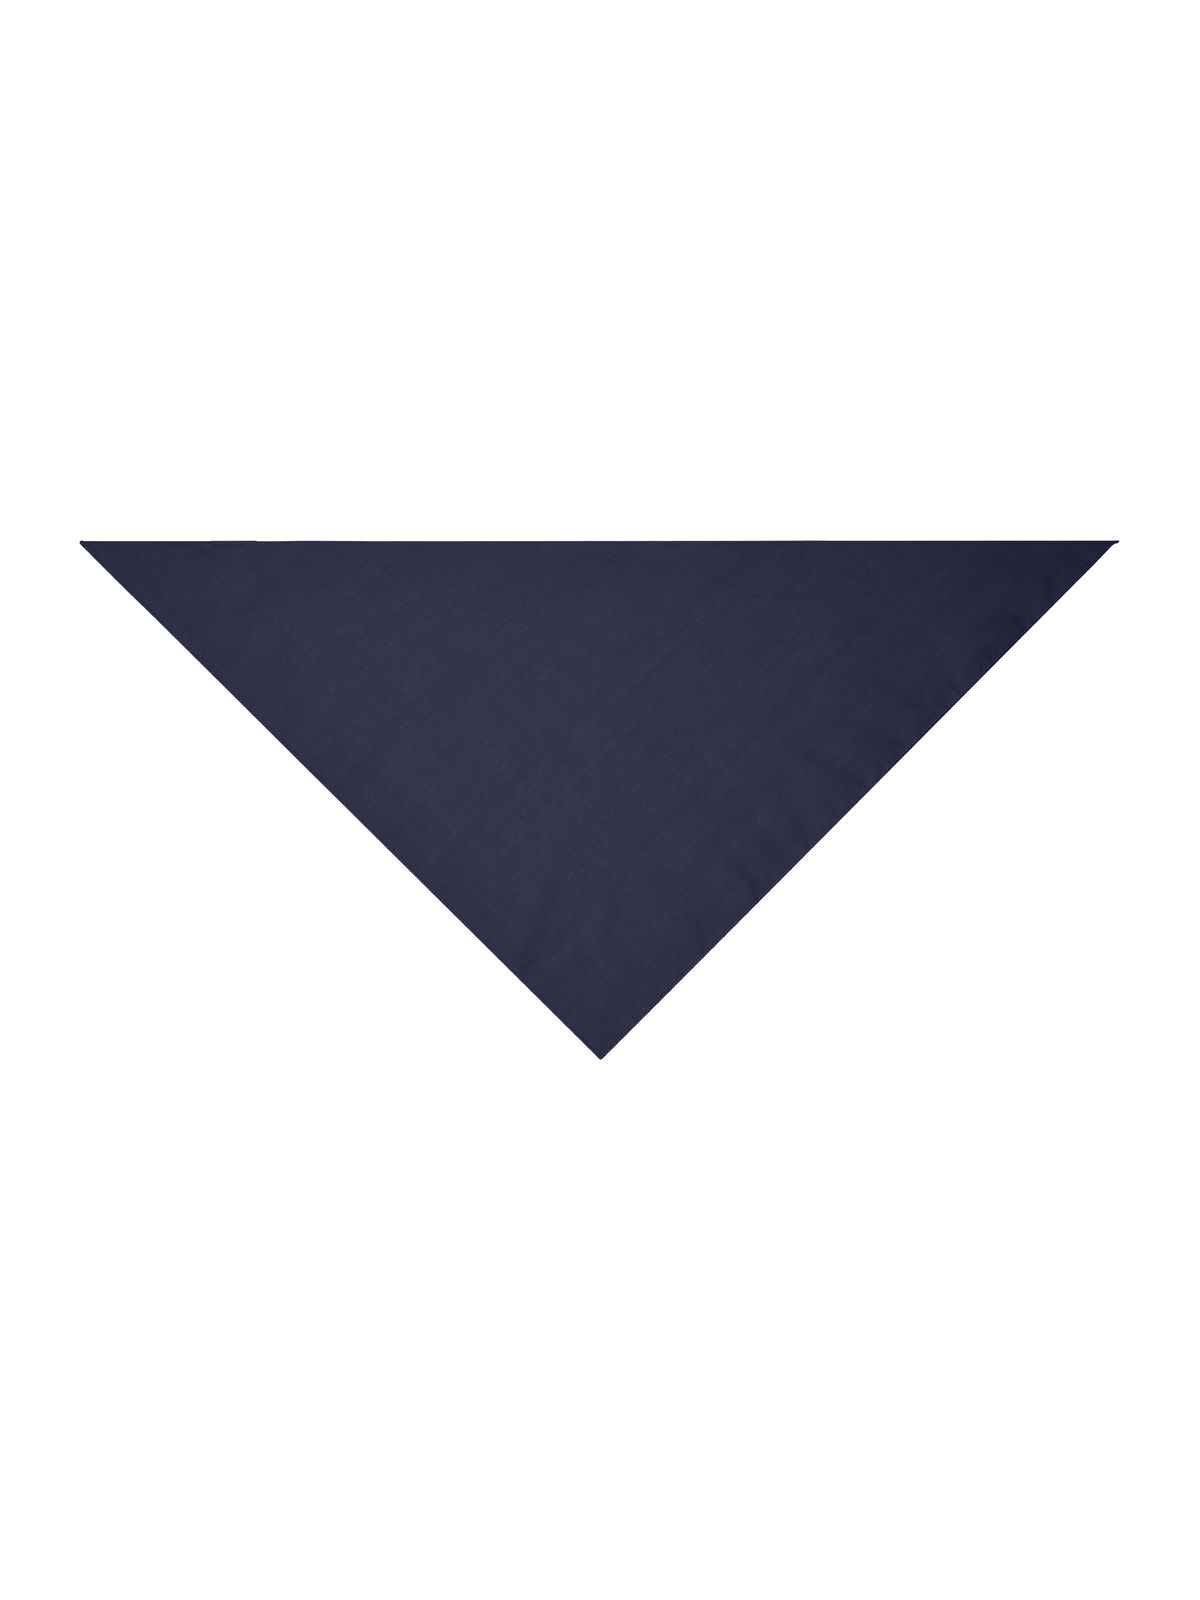 triangular-scarf-navy.webp